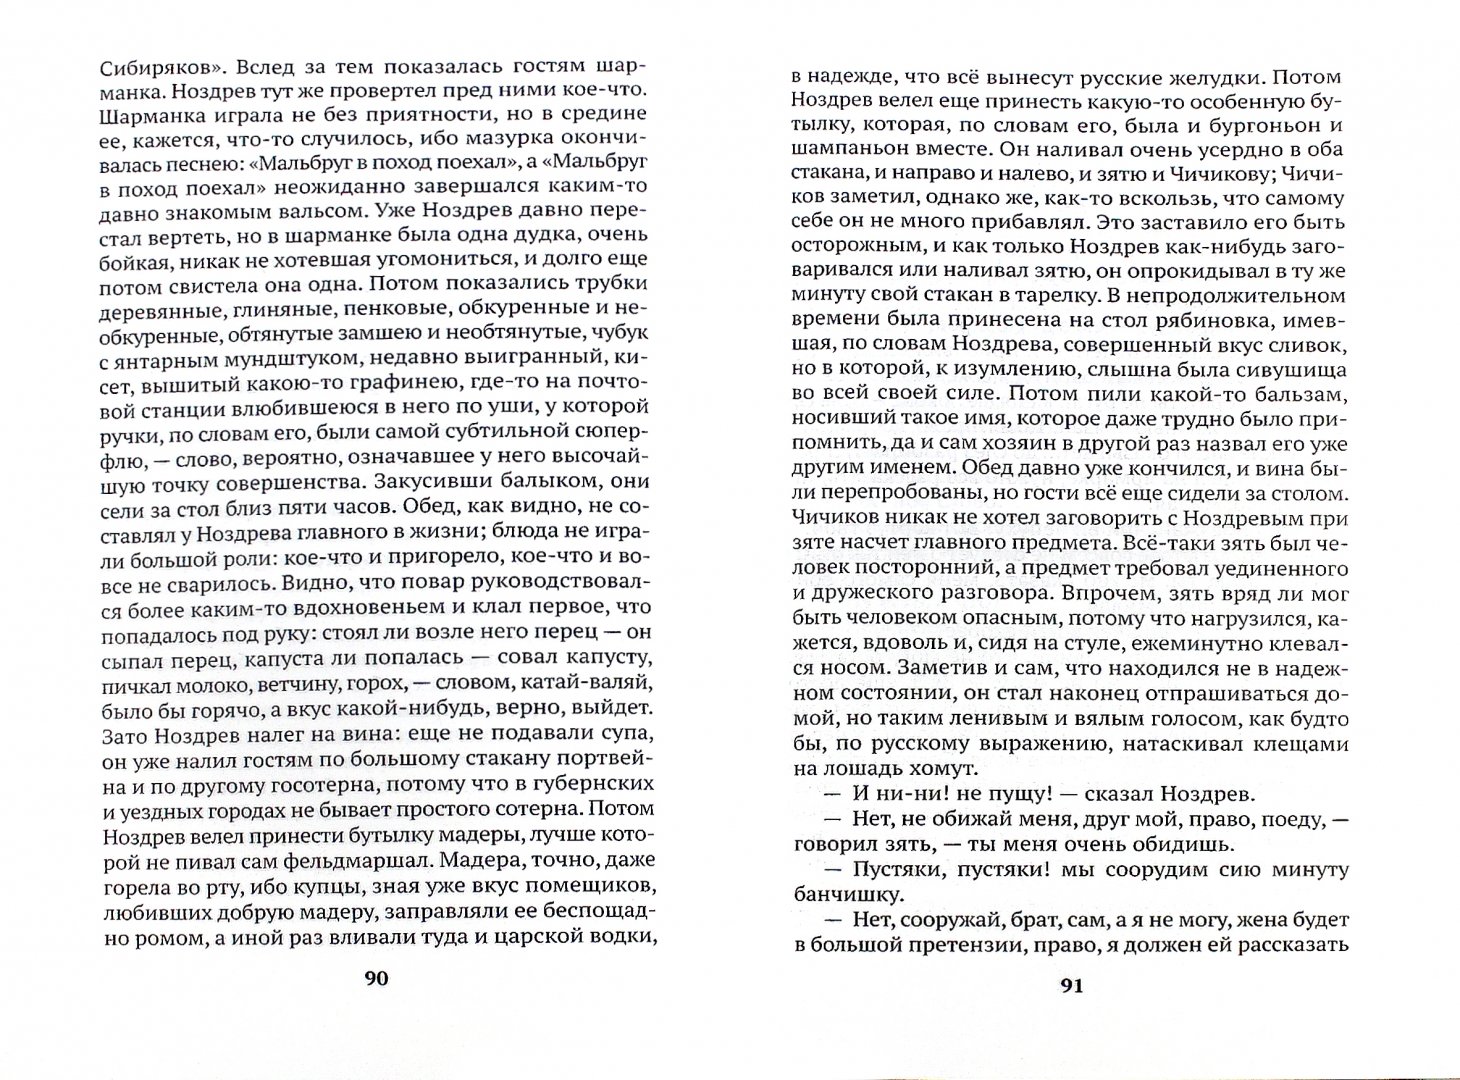 Иллюстрация 1 из 12 для Мертвые души - Николай Гоголь | Лабиринт - книги. Источник: Лабиринт